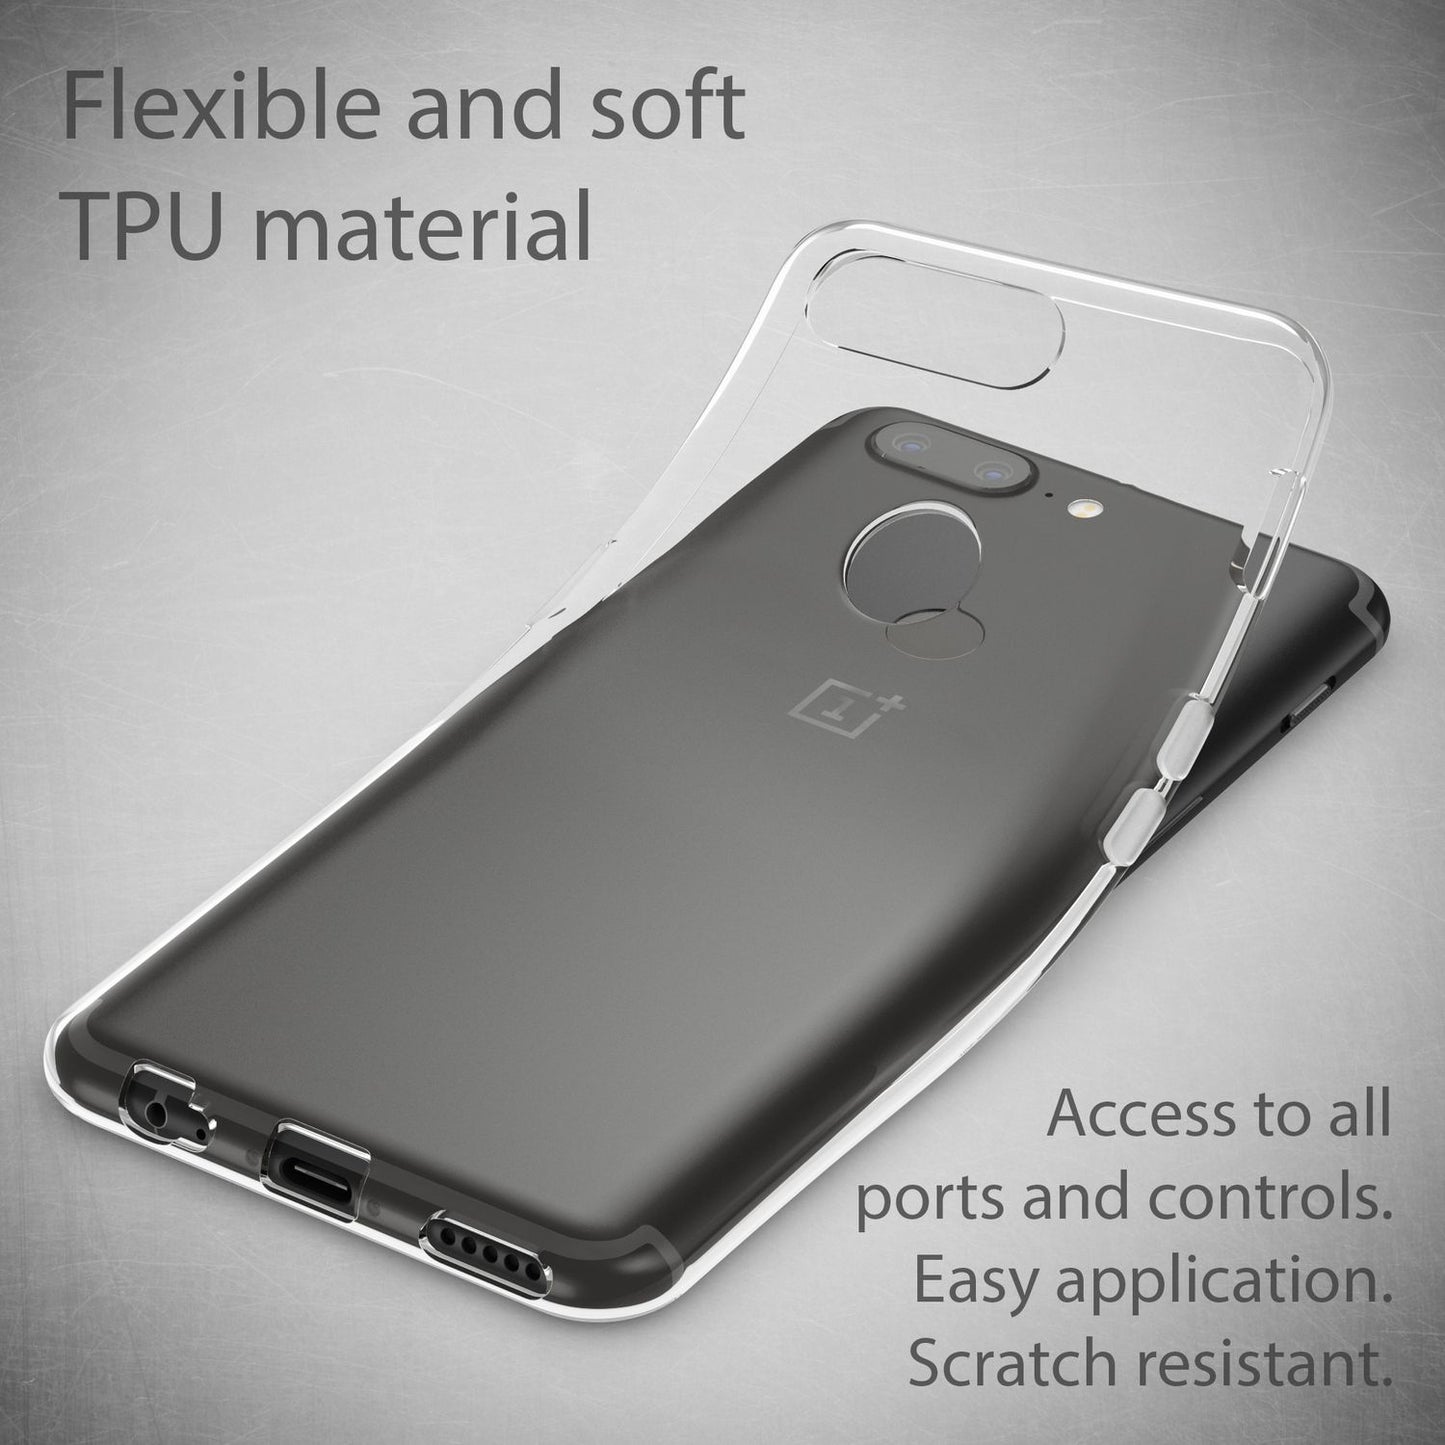 OnePlus 5T Handy Hülle von NALIA, Transparenter Silikon Case Cover Tasche Schutz